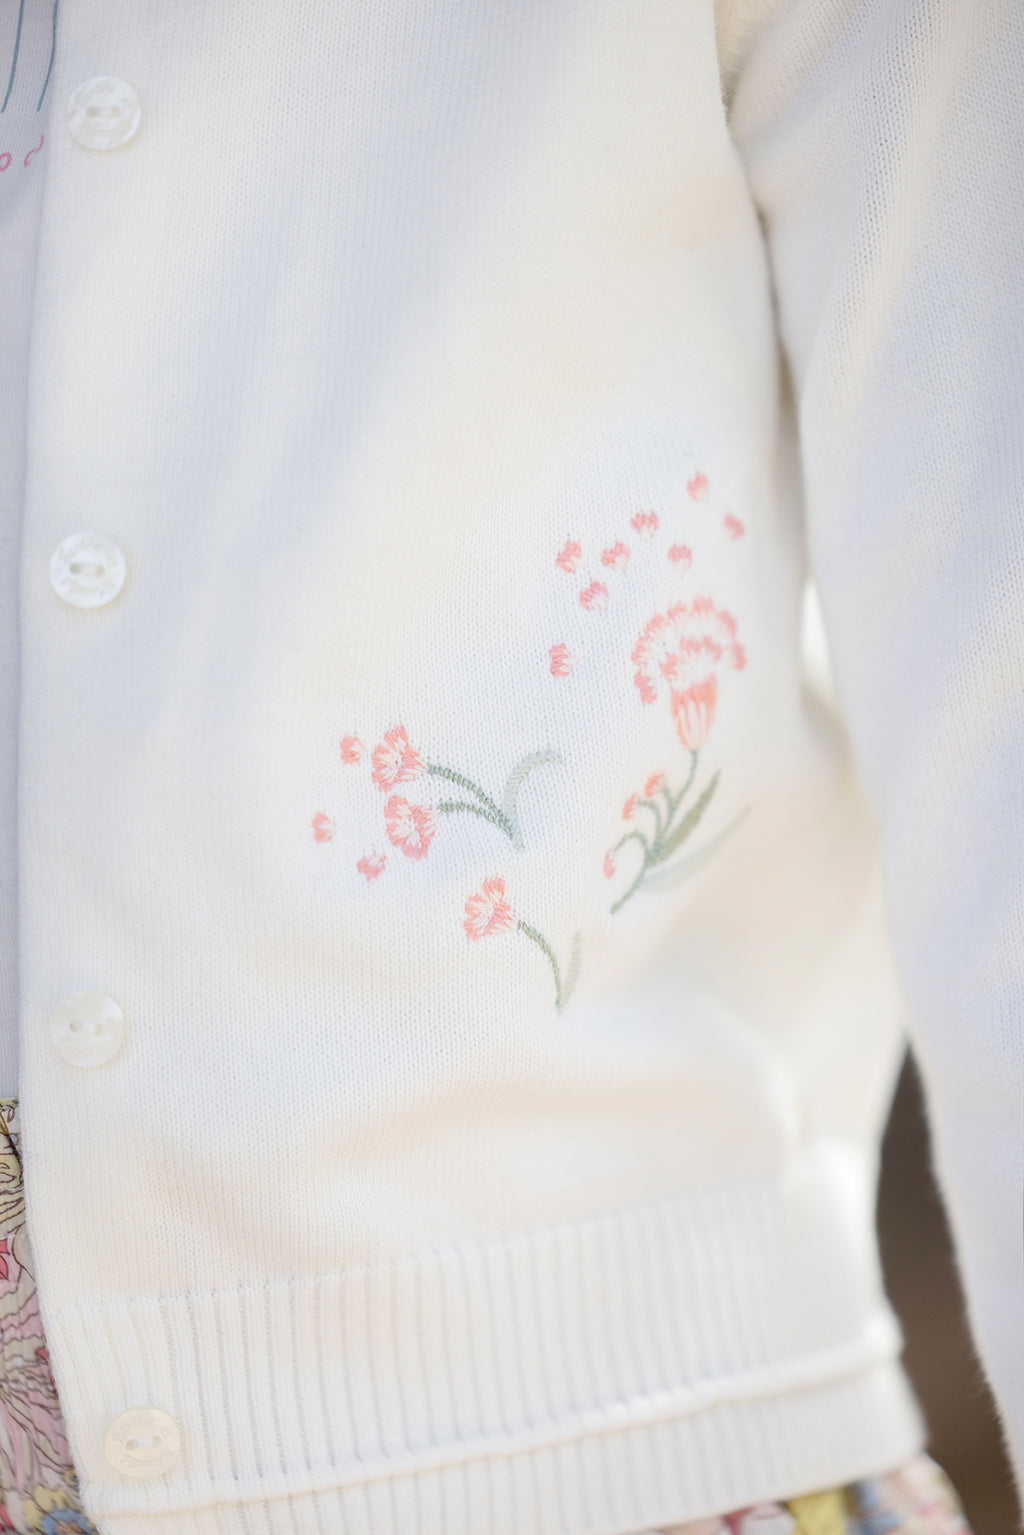 Cardigan - Ecru Flower embroidery